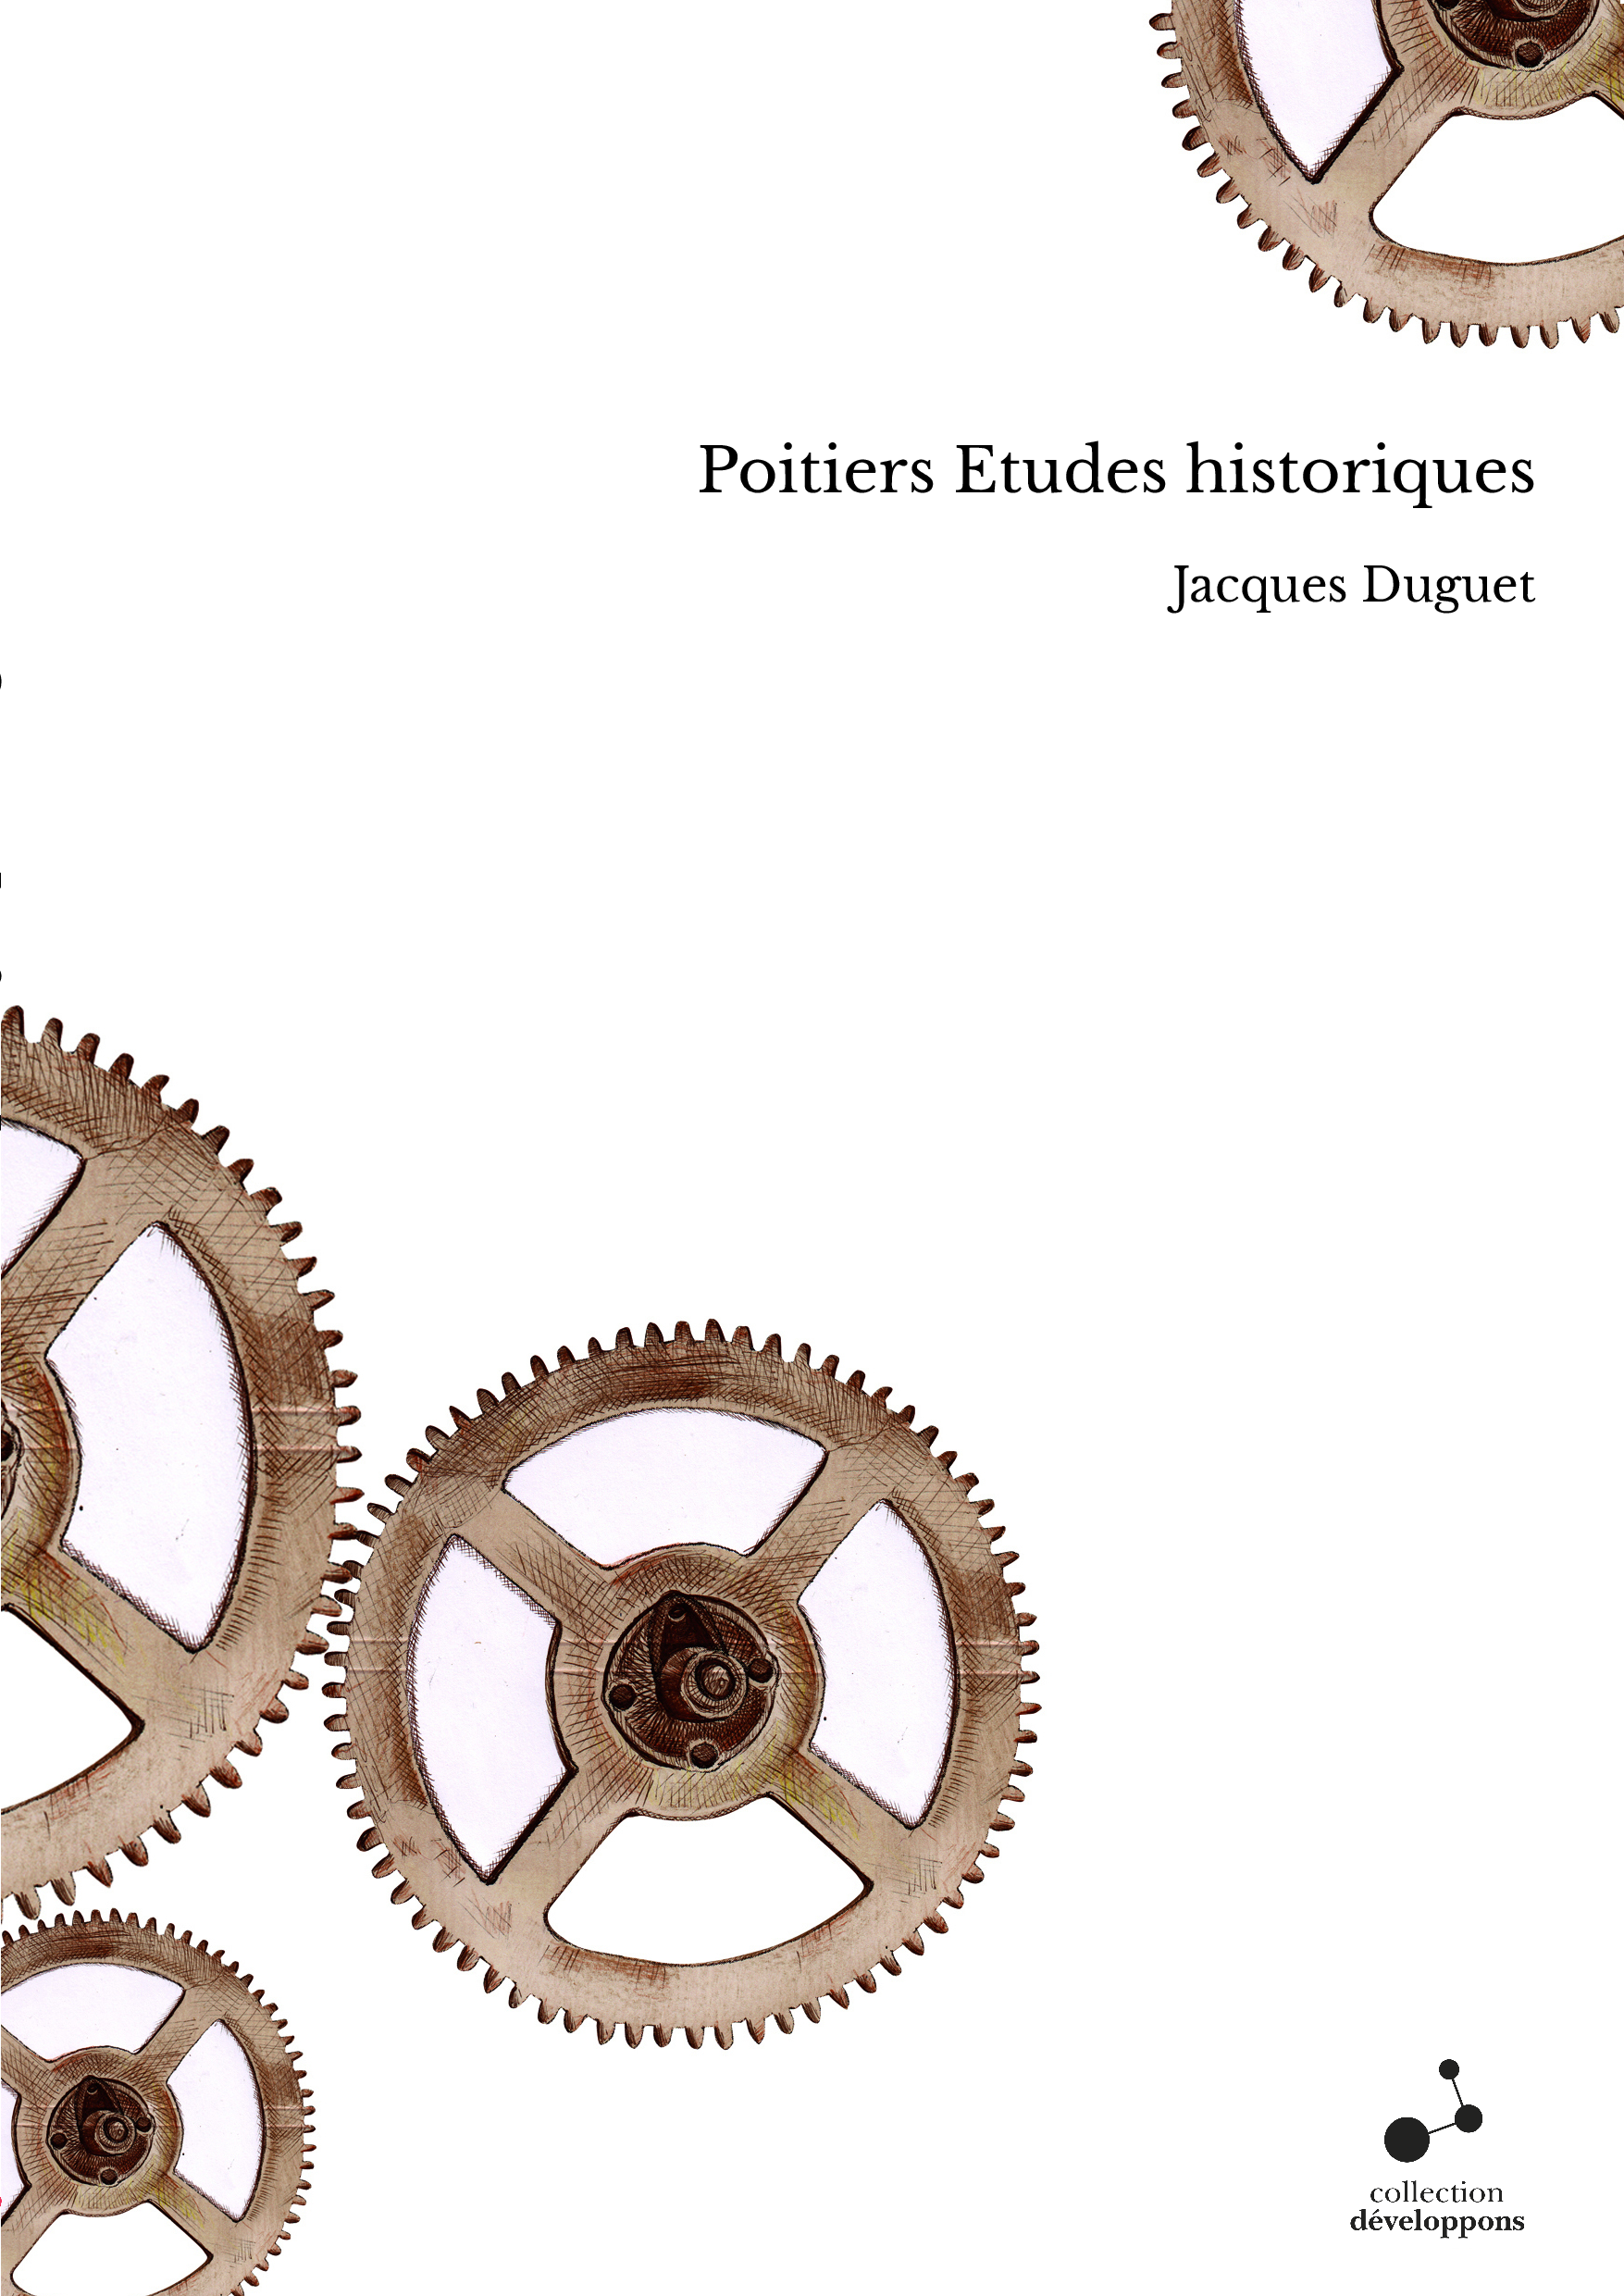 Poitiers Etudes historiques